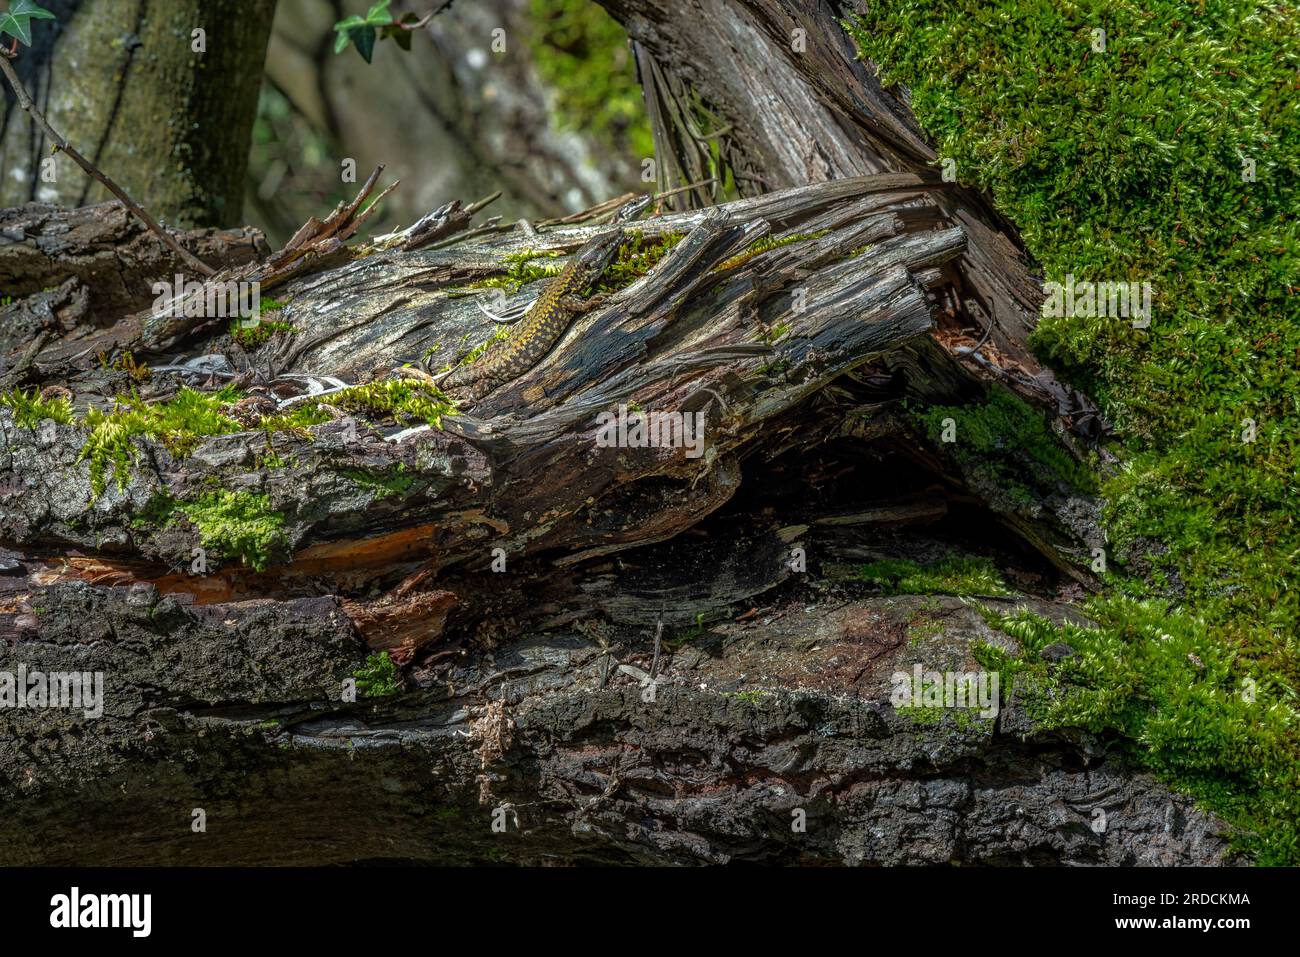 Eidechse getarnt auf einem umgestürzten Baum Stockfoto